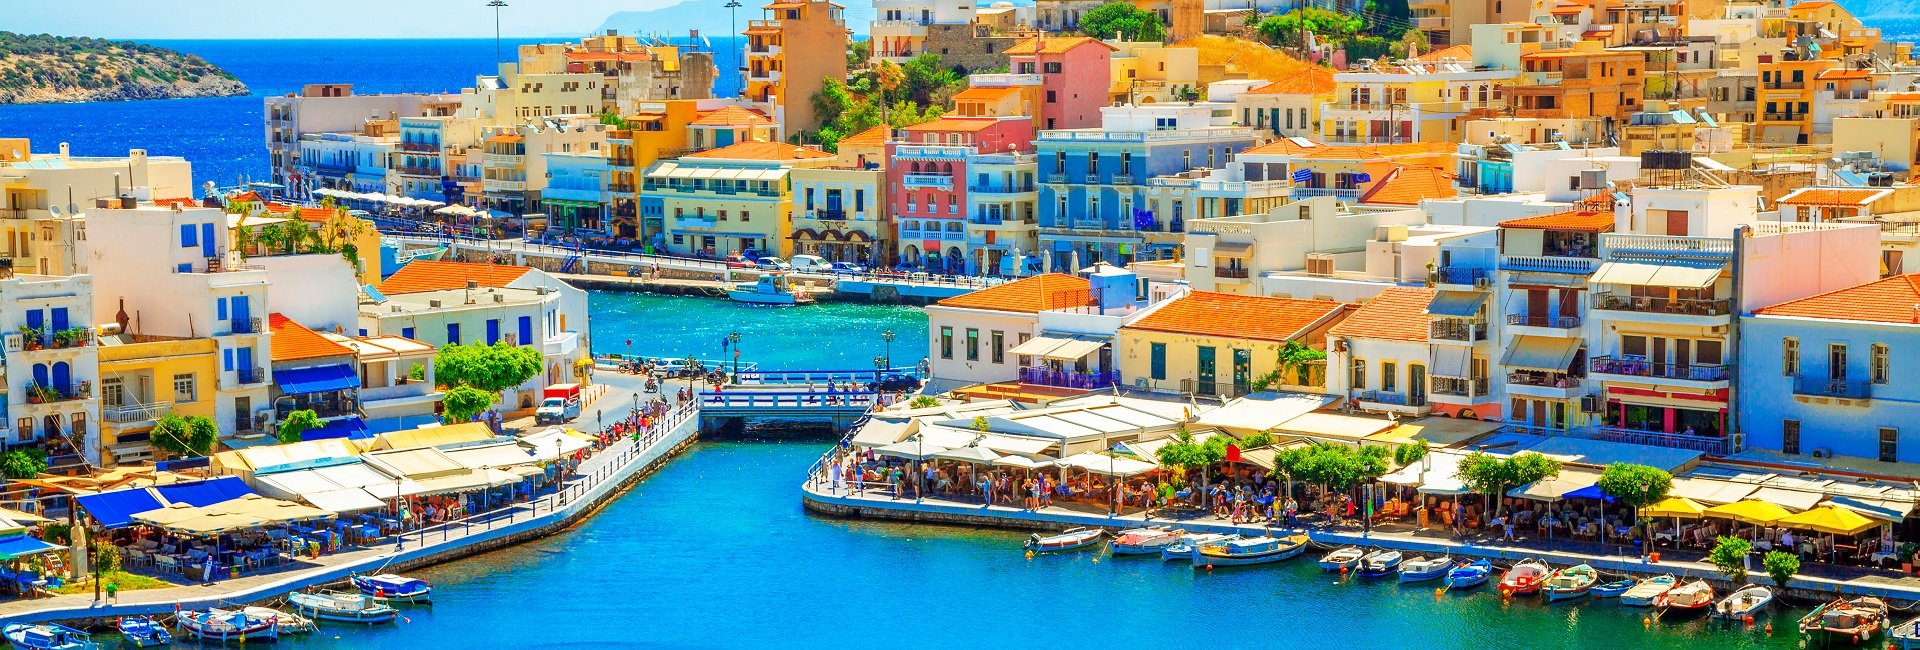 Creta - Chania, Grecia